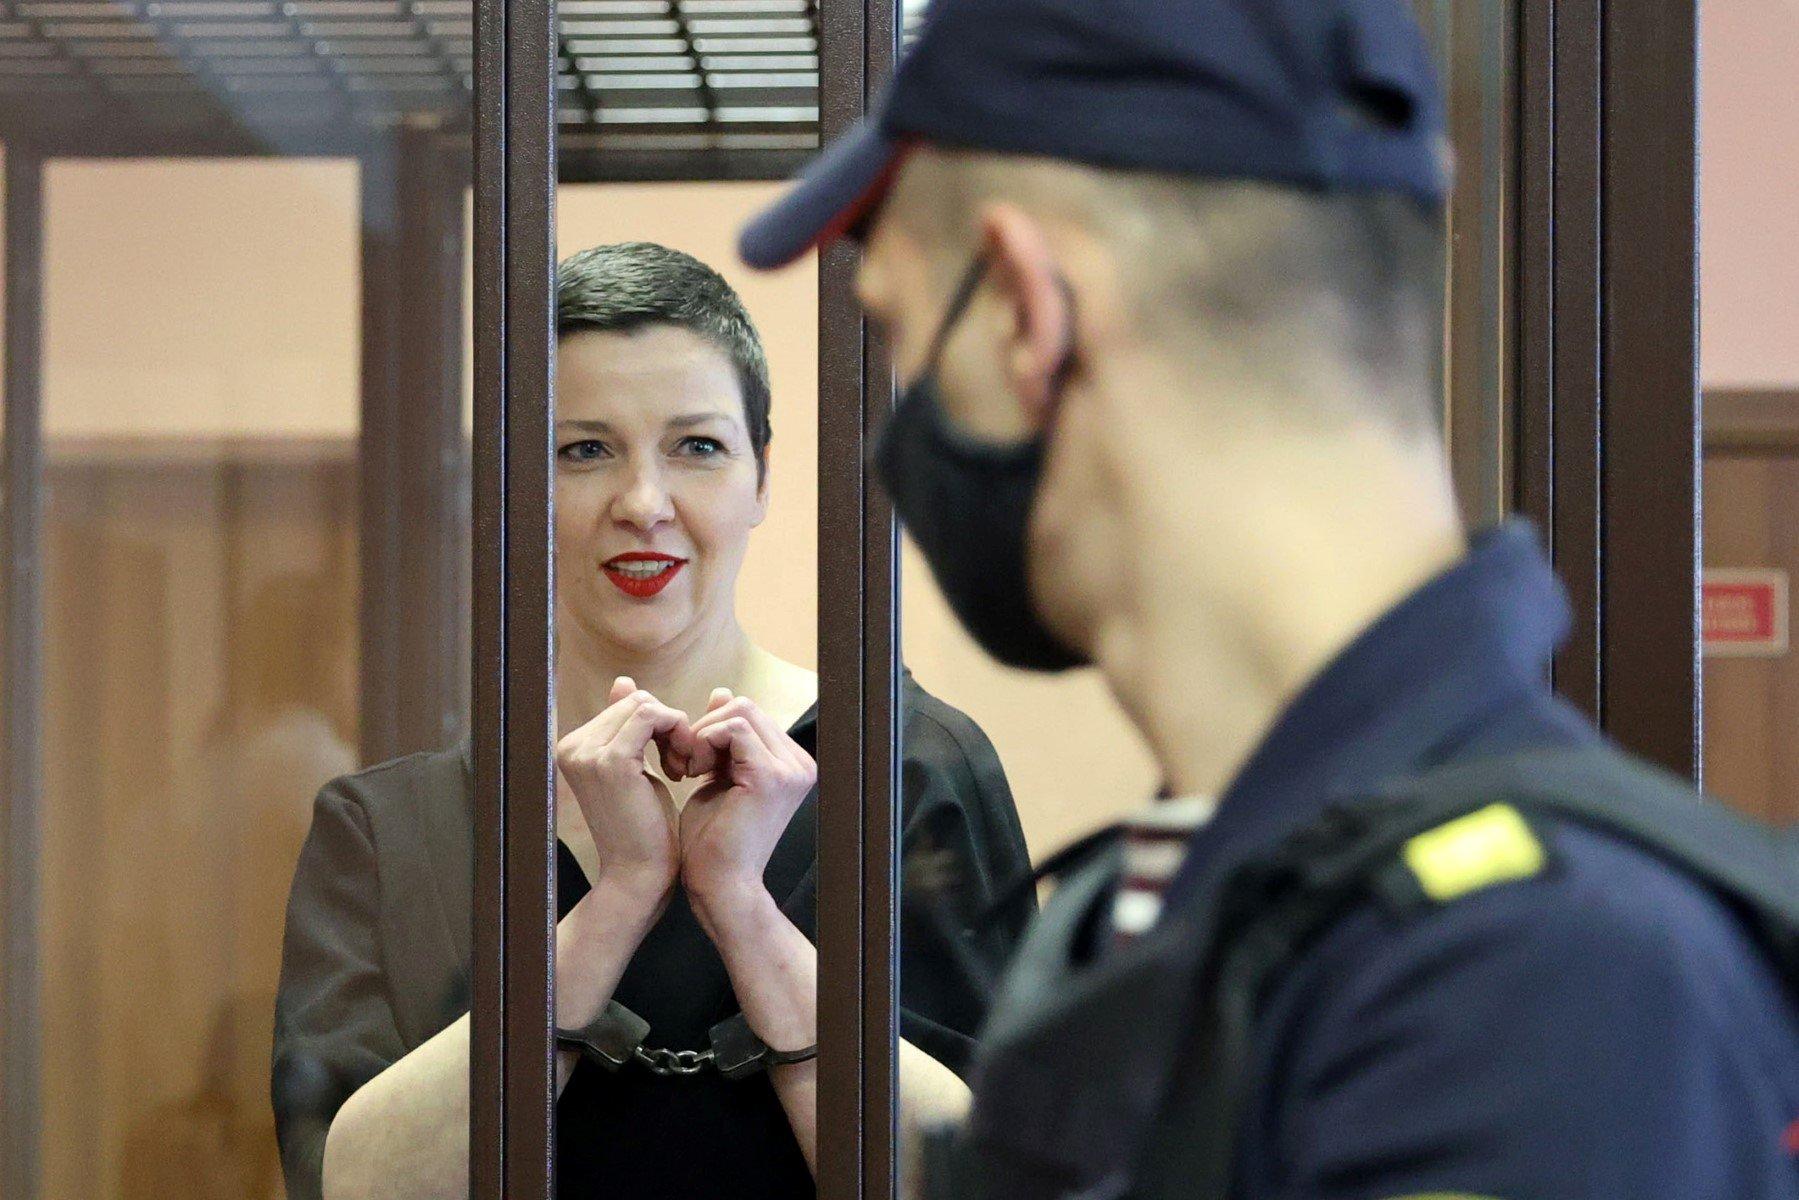 Maria Kalesnikawa krótko ostrzyżona zza krat pokazuje złożonymi dłoniami znak serca, na pierwszym plane profiol strażnika w masce